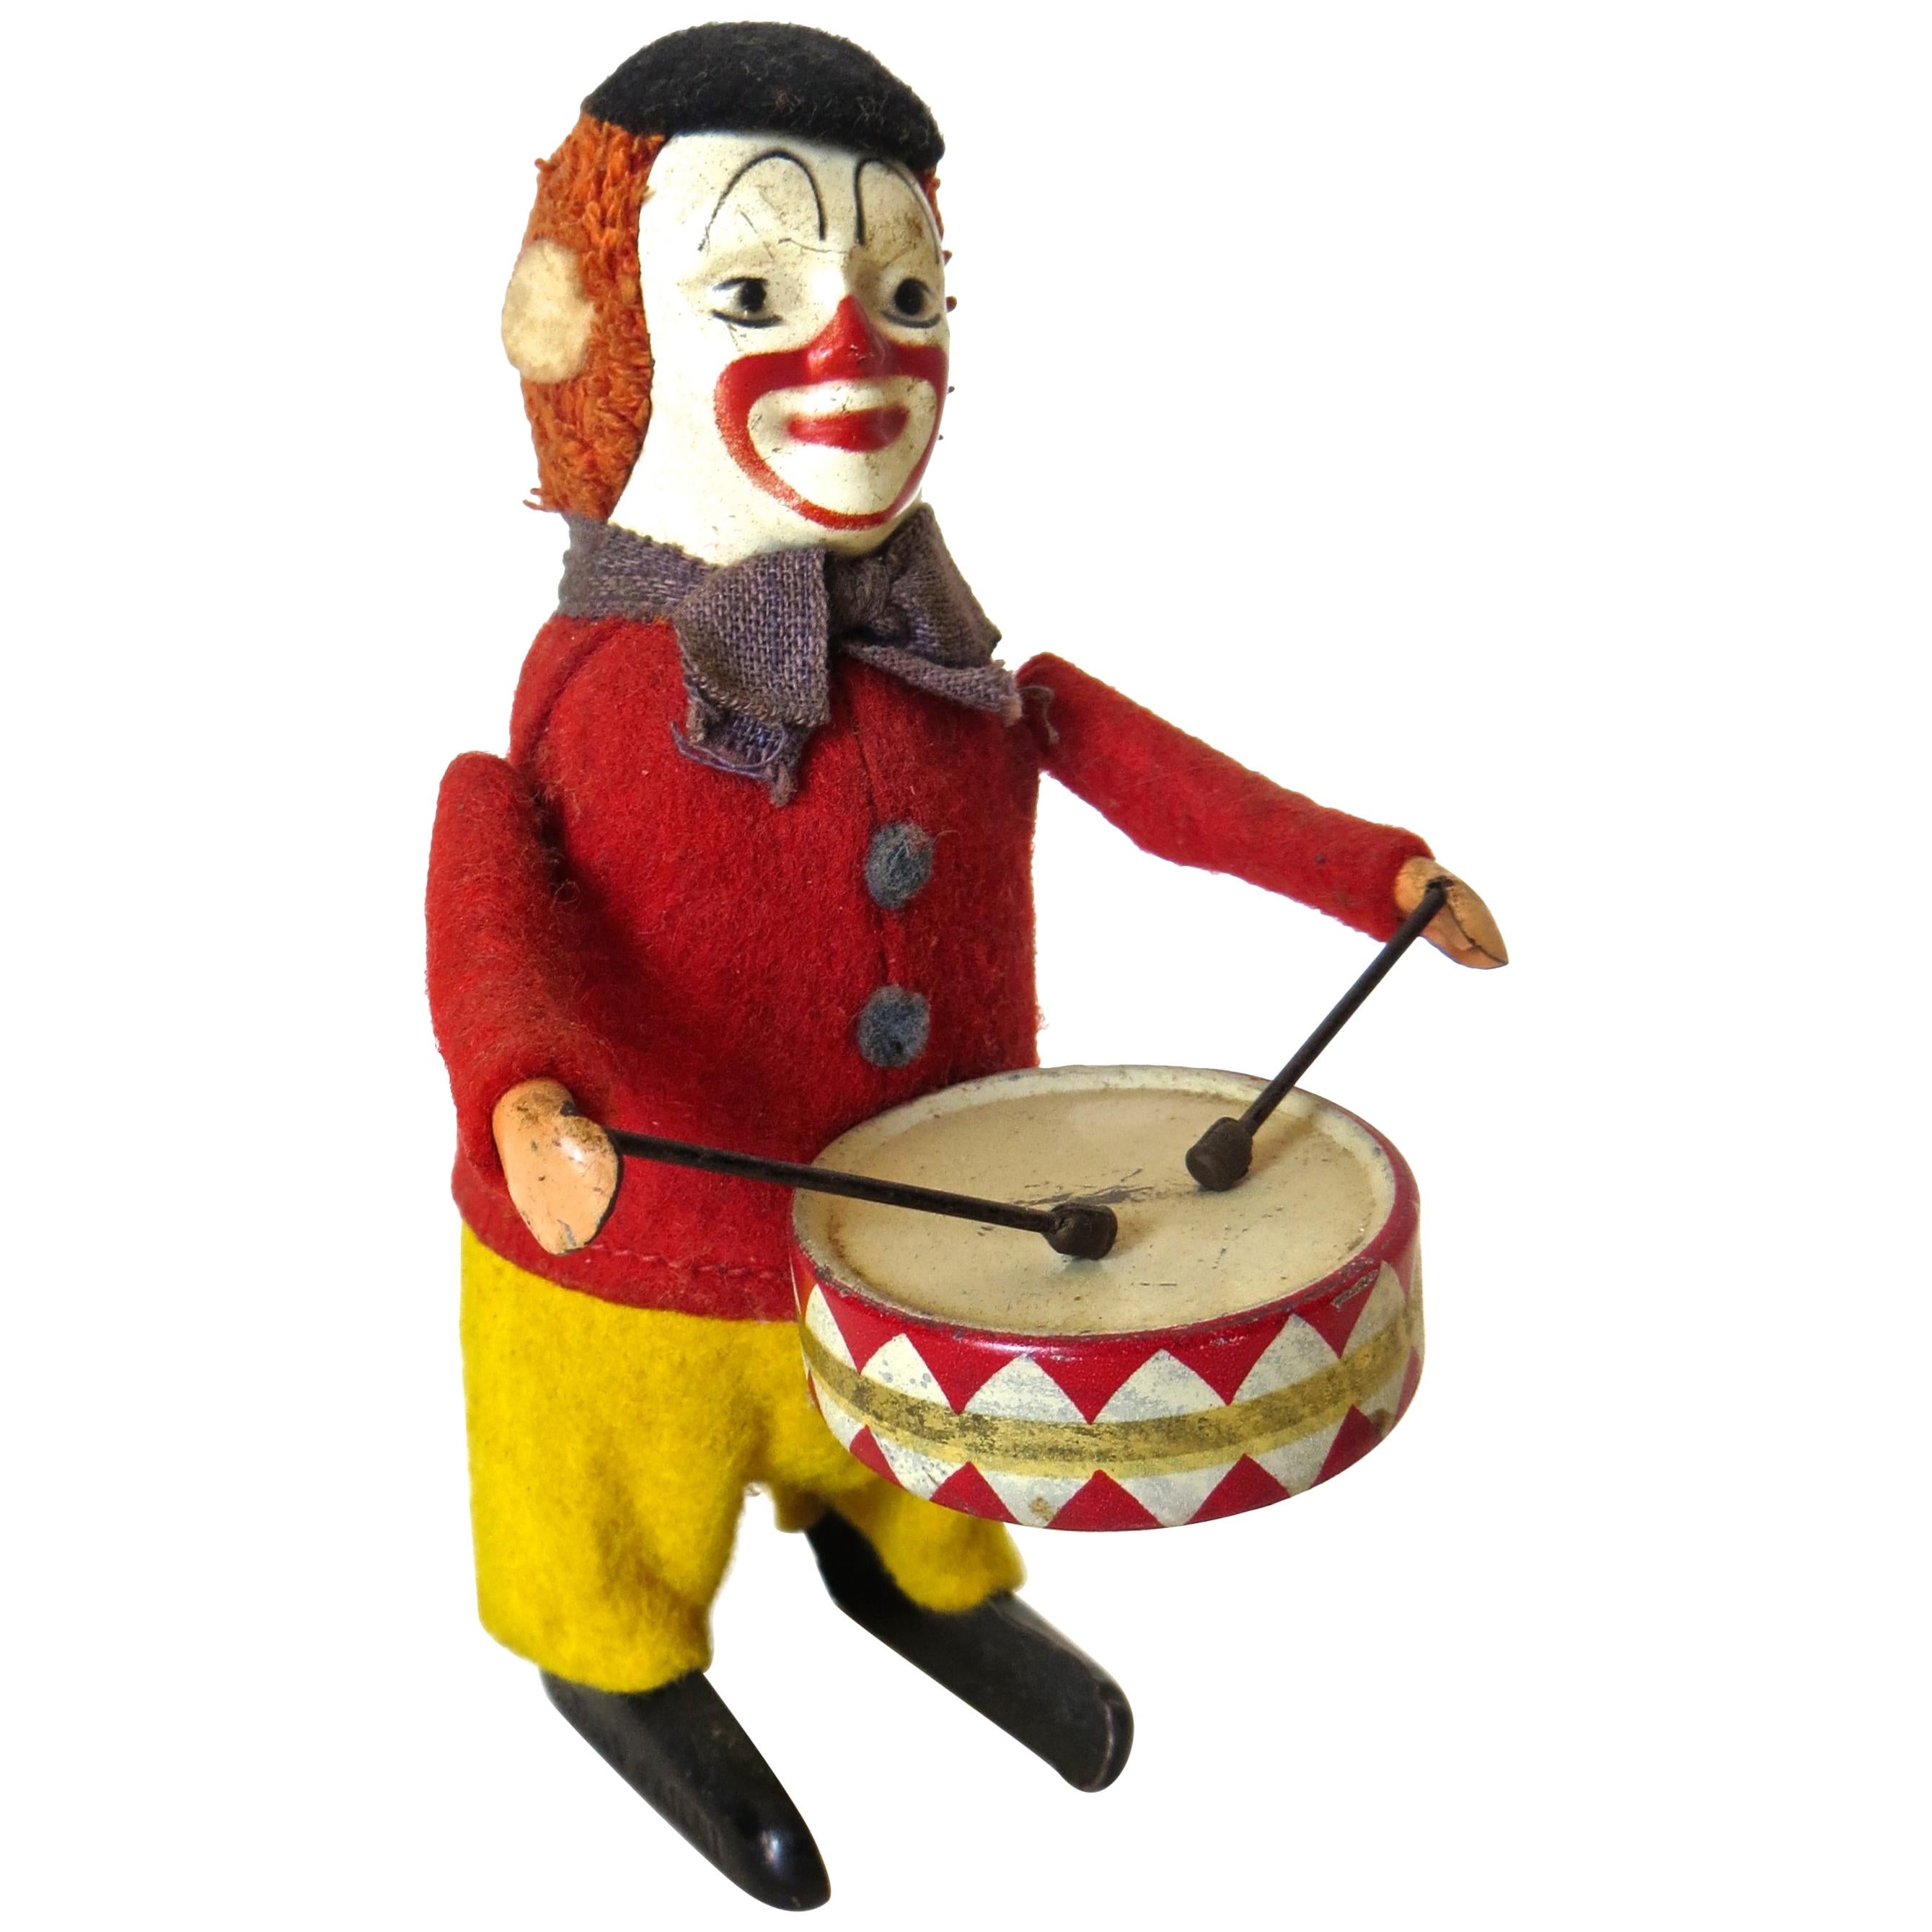 "Clown Drummer" Clockwork Toy Schuco, German, circa 1940